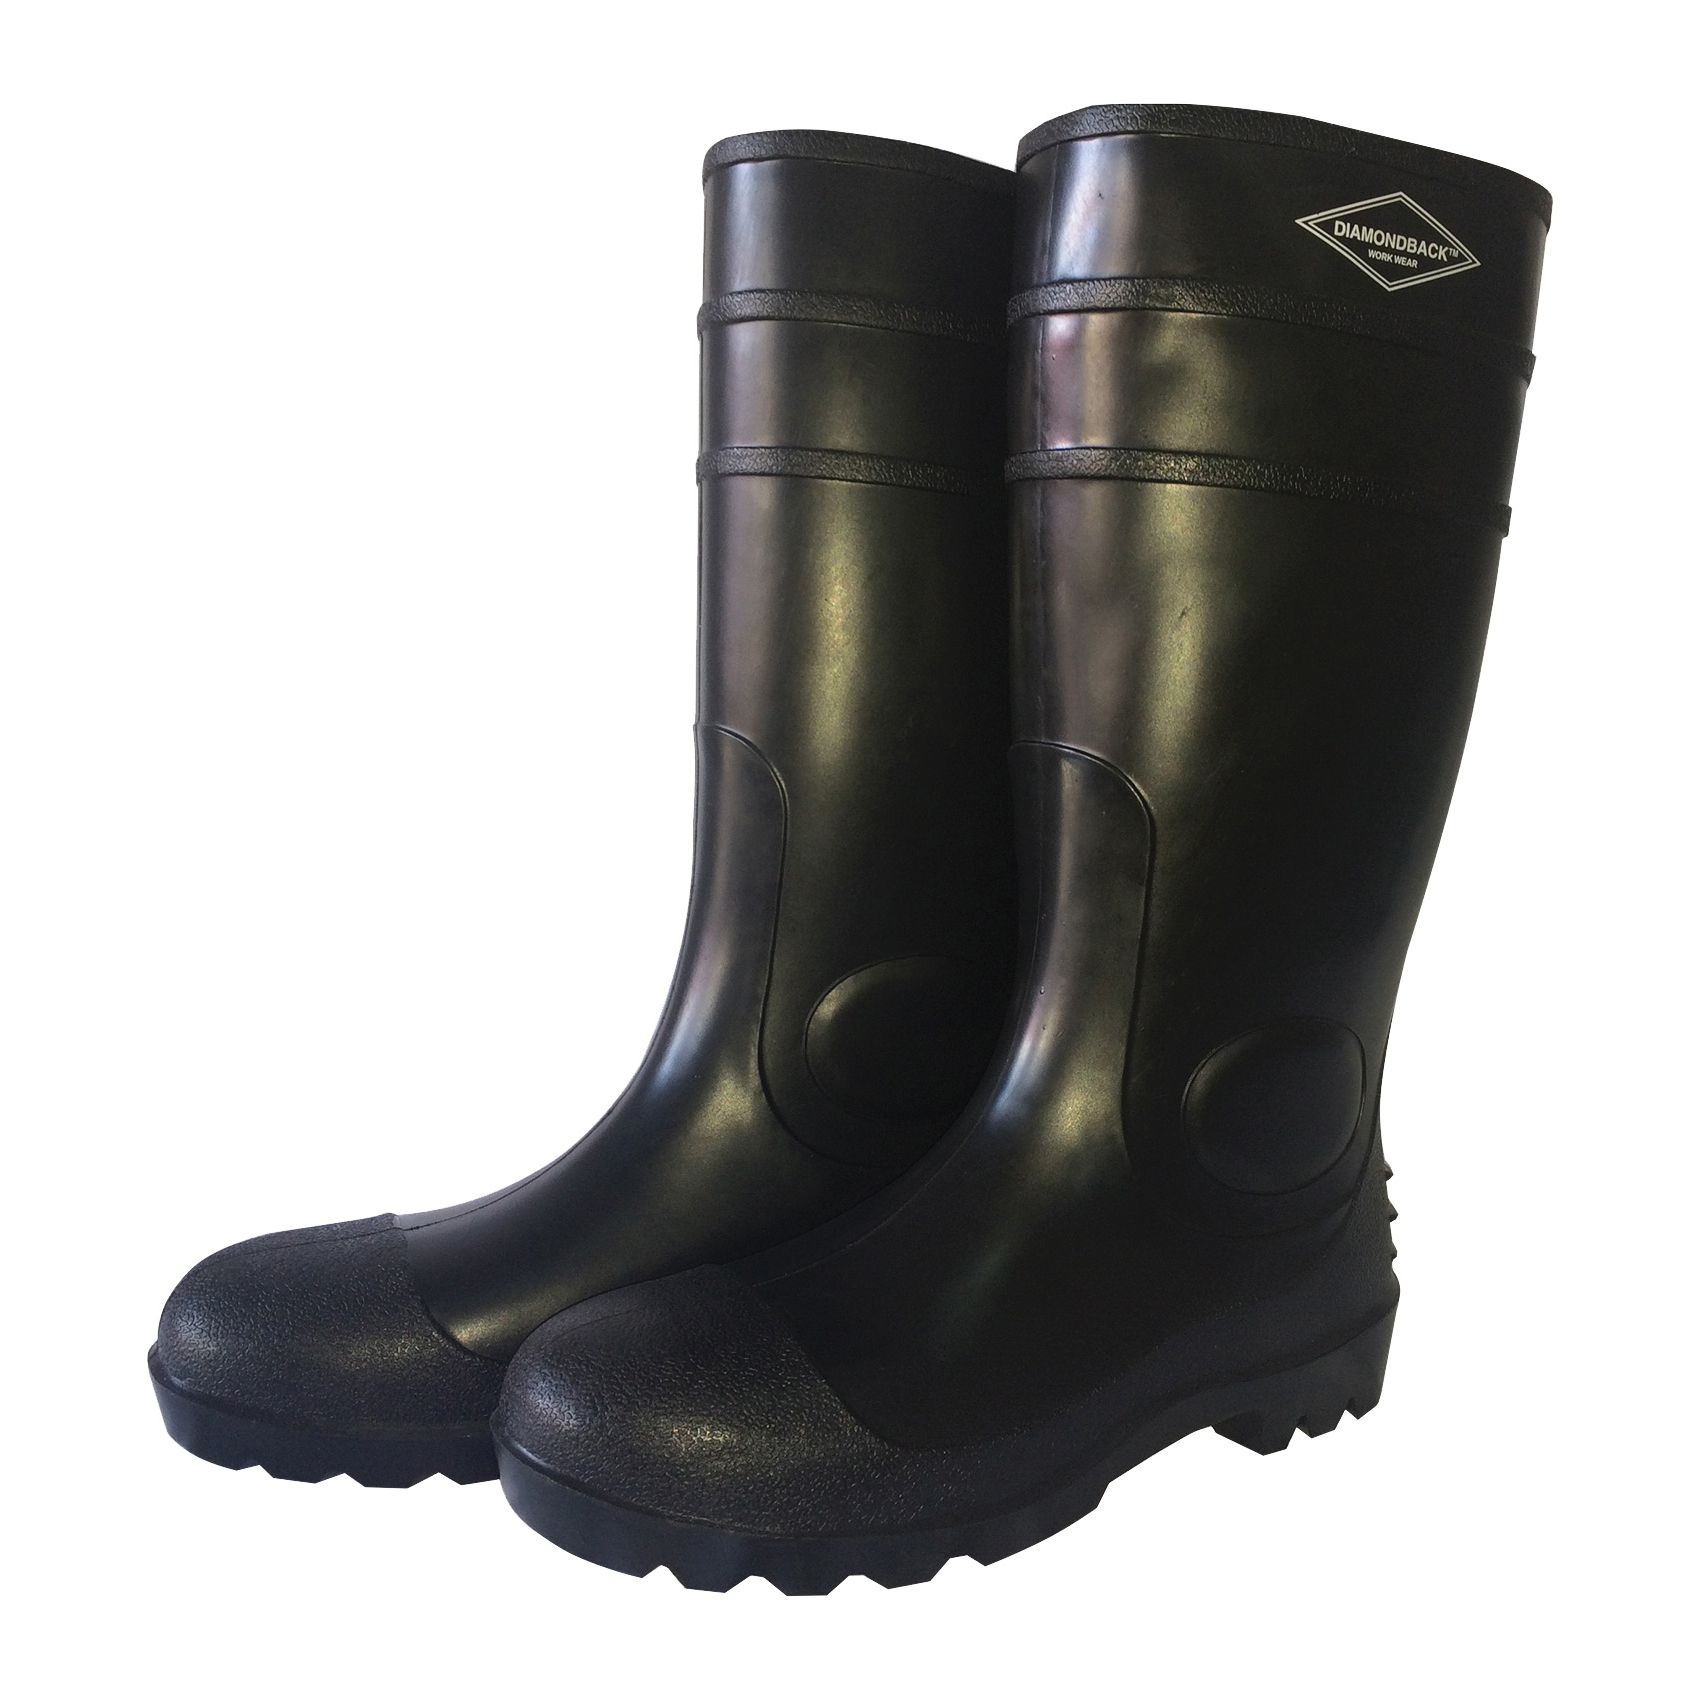 L-G06B9 Knee Boots, 9, Black, PVC Upper, Slip on Boots Closure